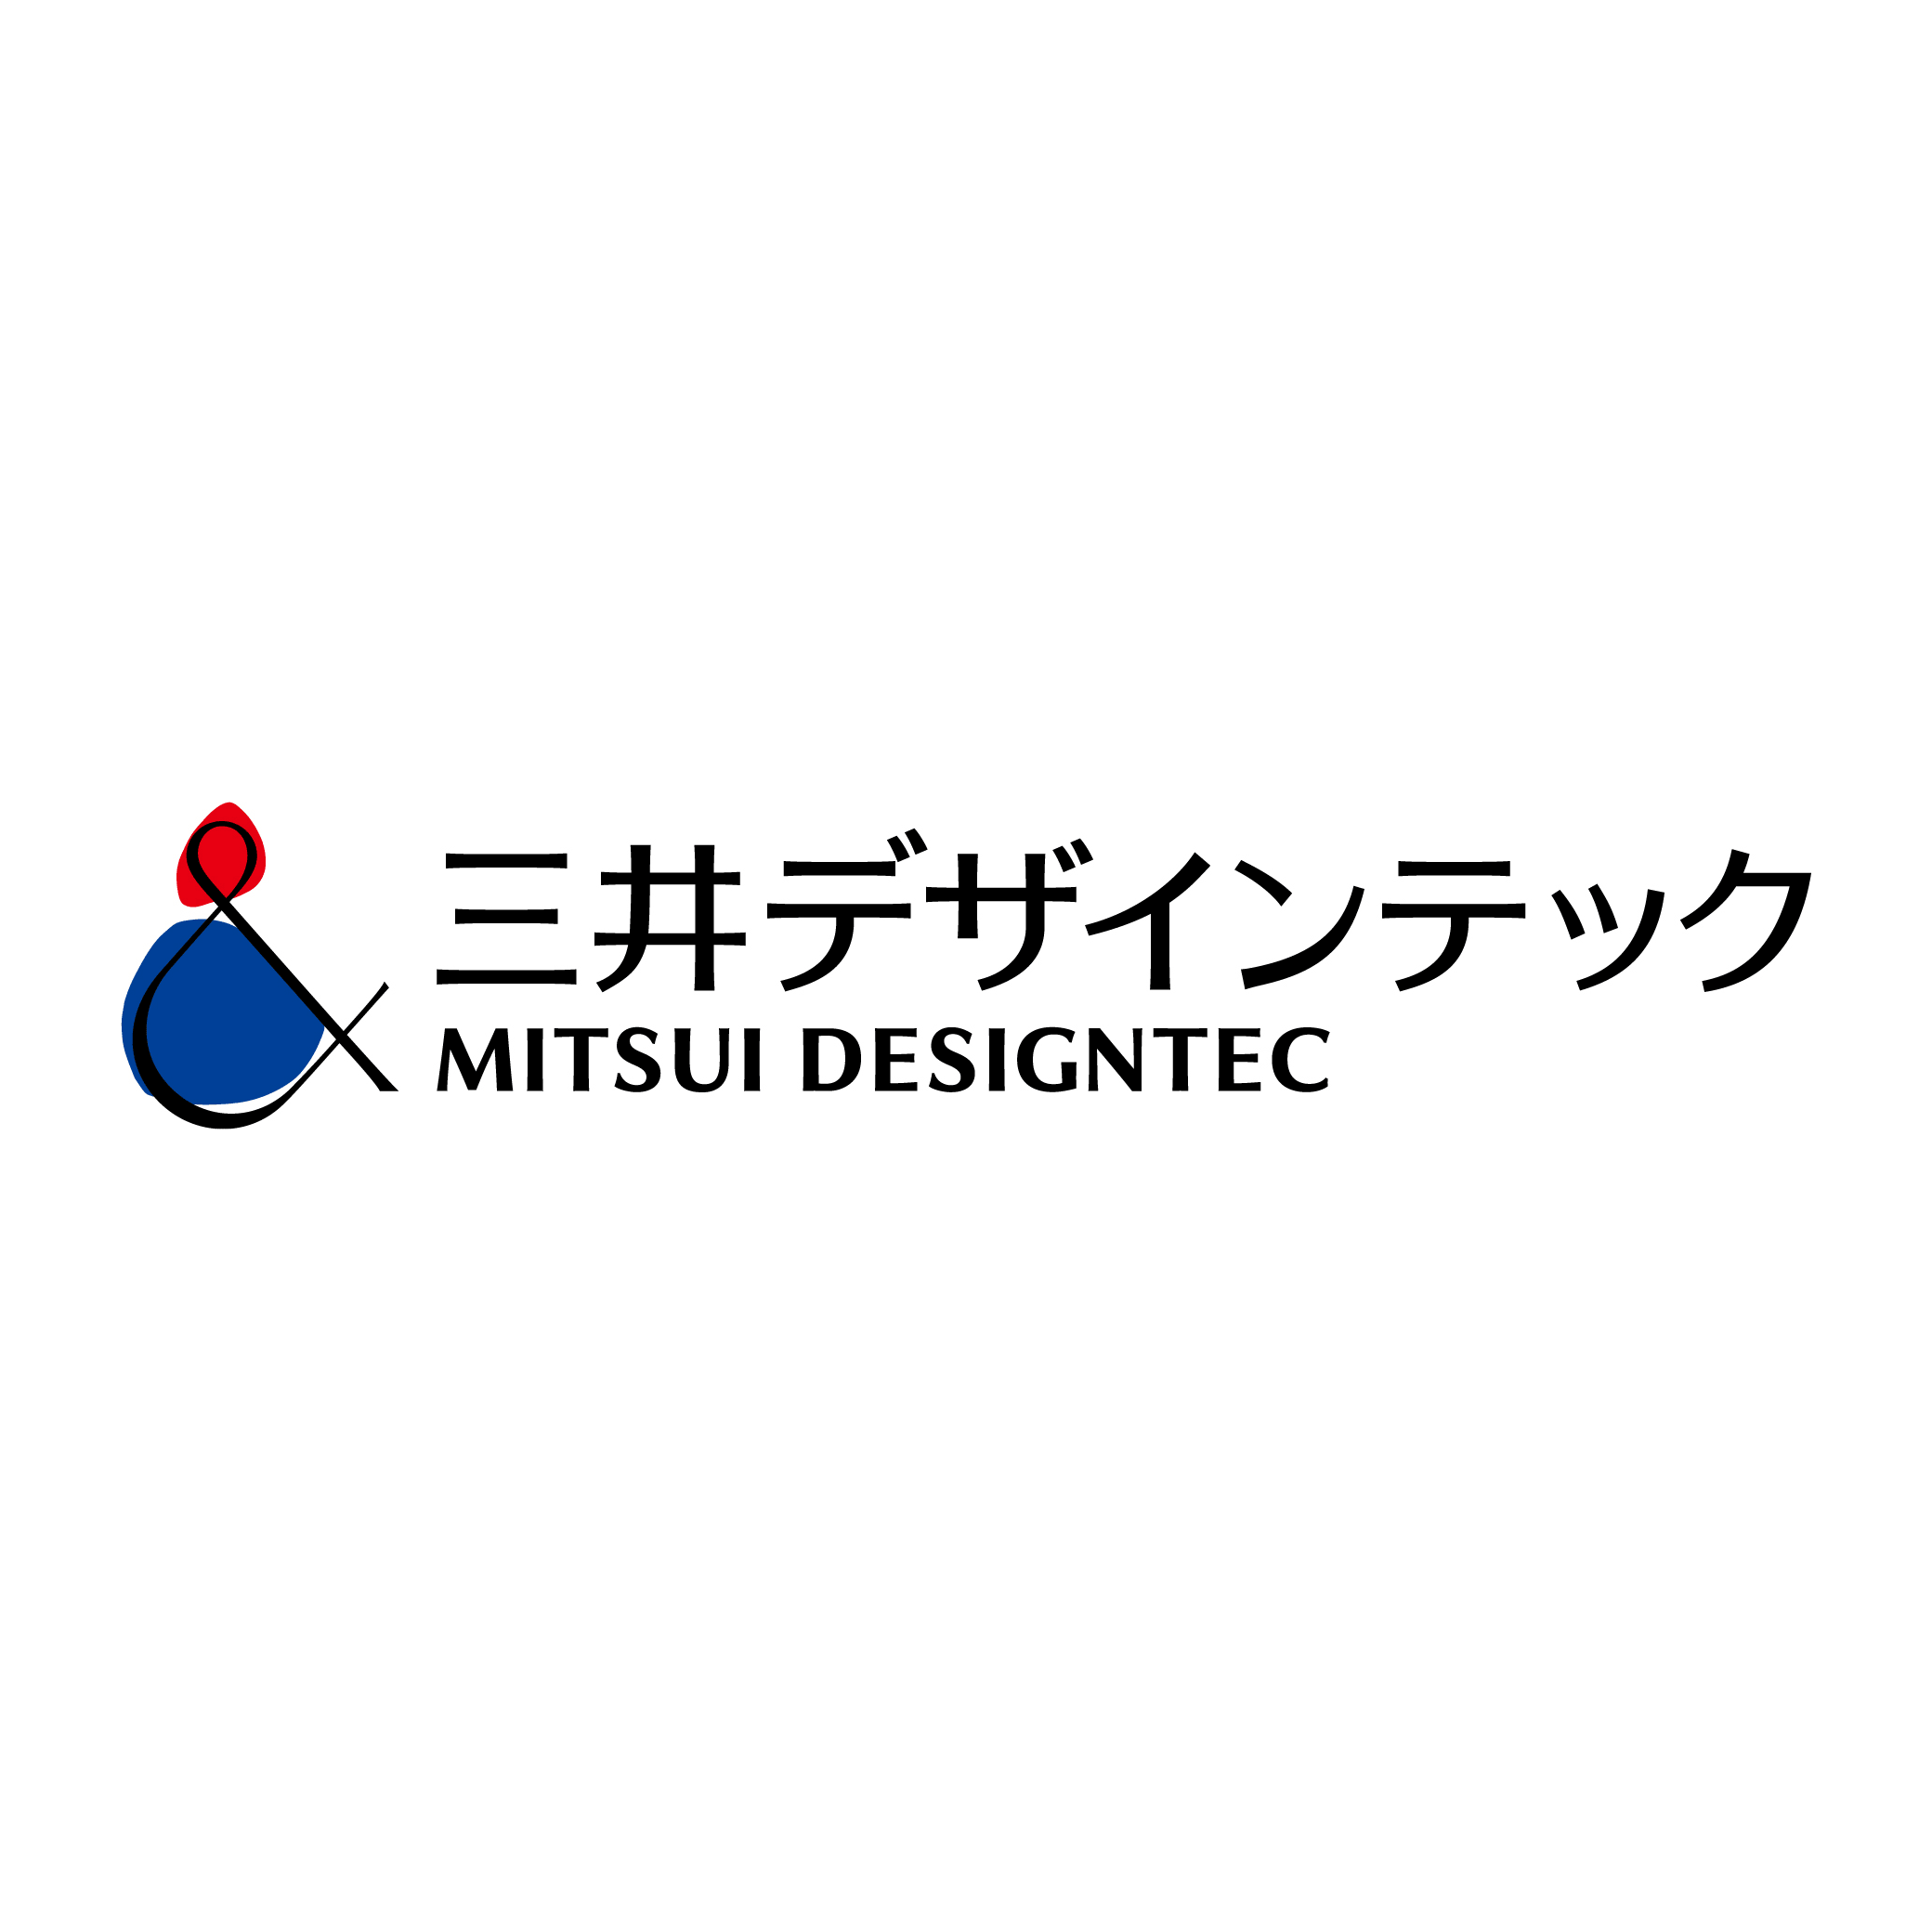 三井デザインテック株式会社さまのロゴ画像